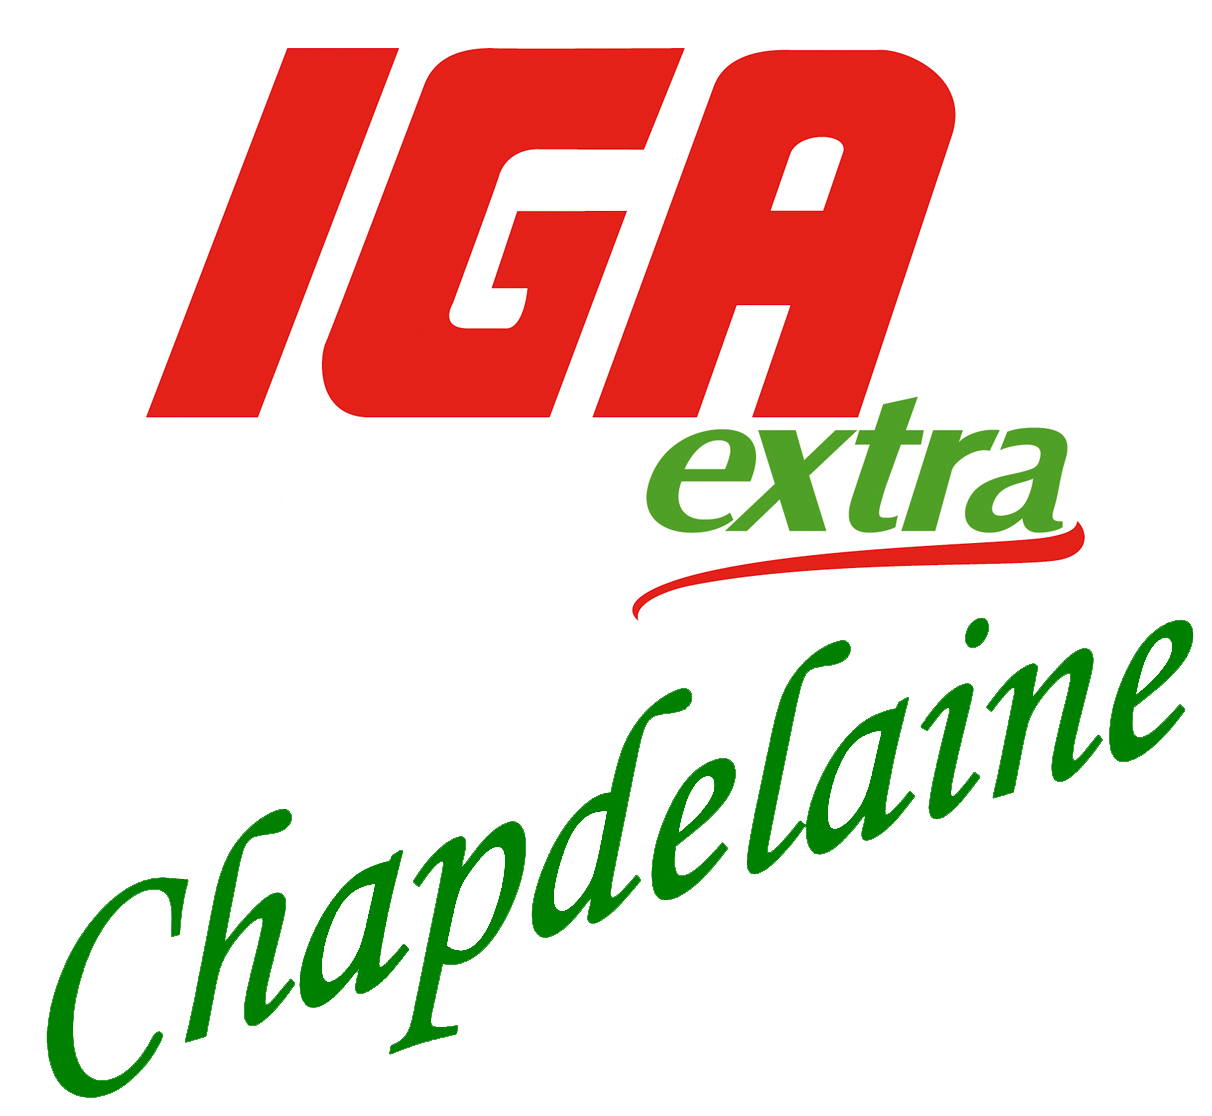 IGA_Chapdelaine_logo